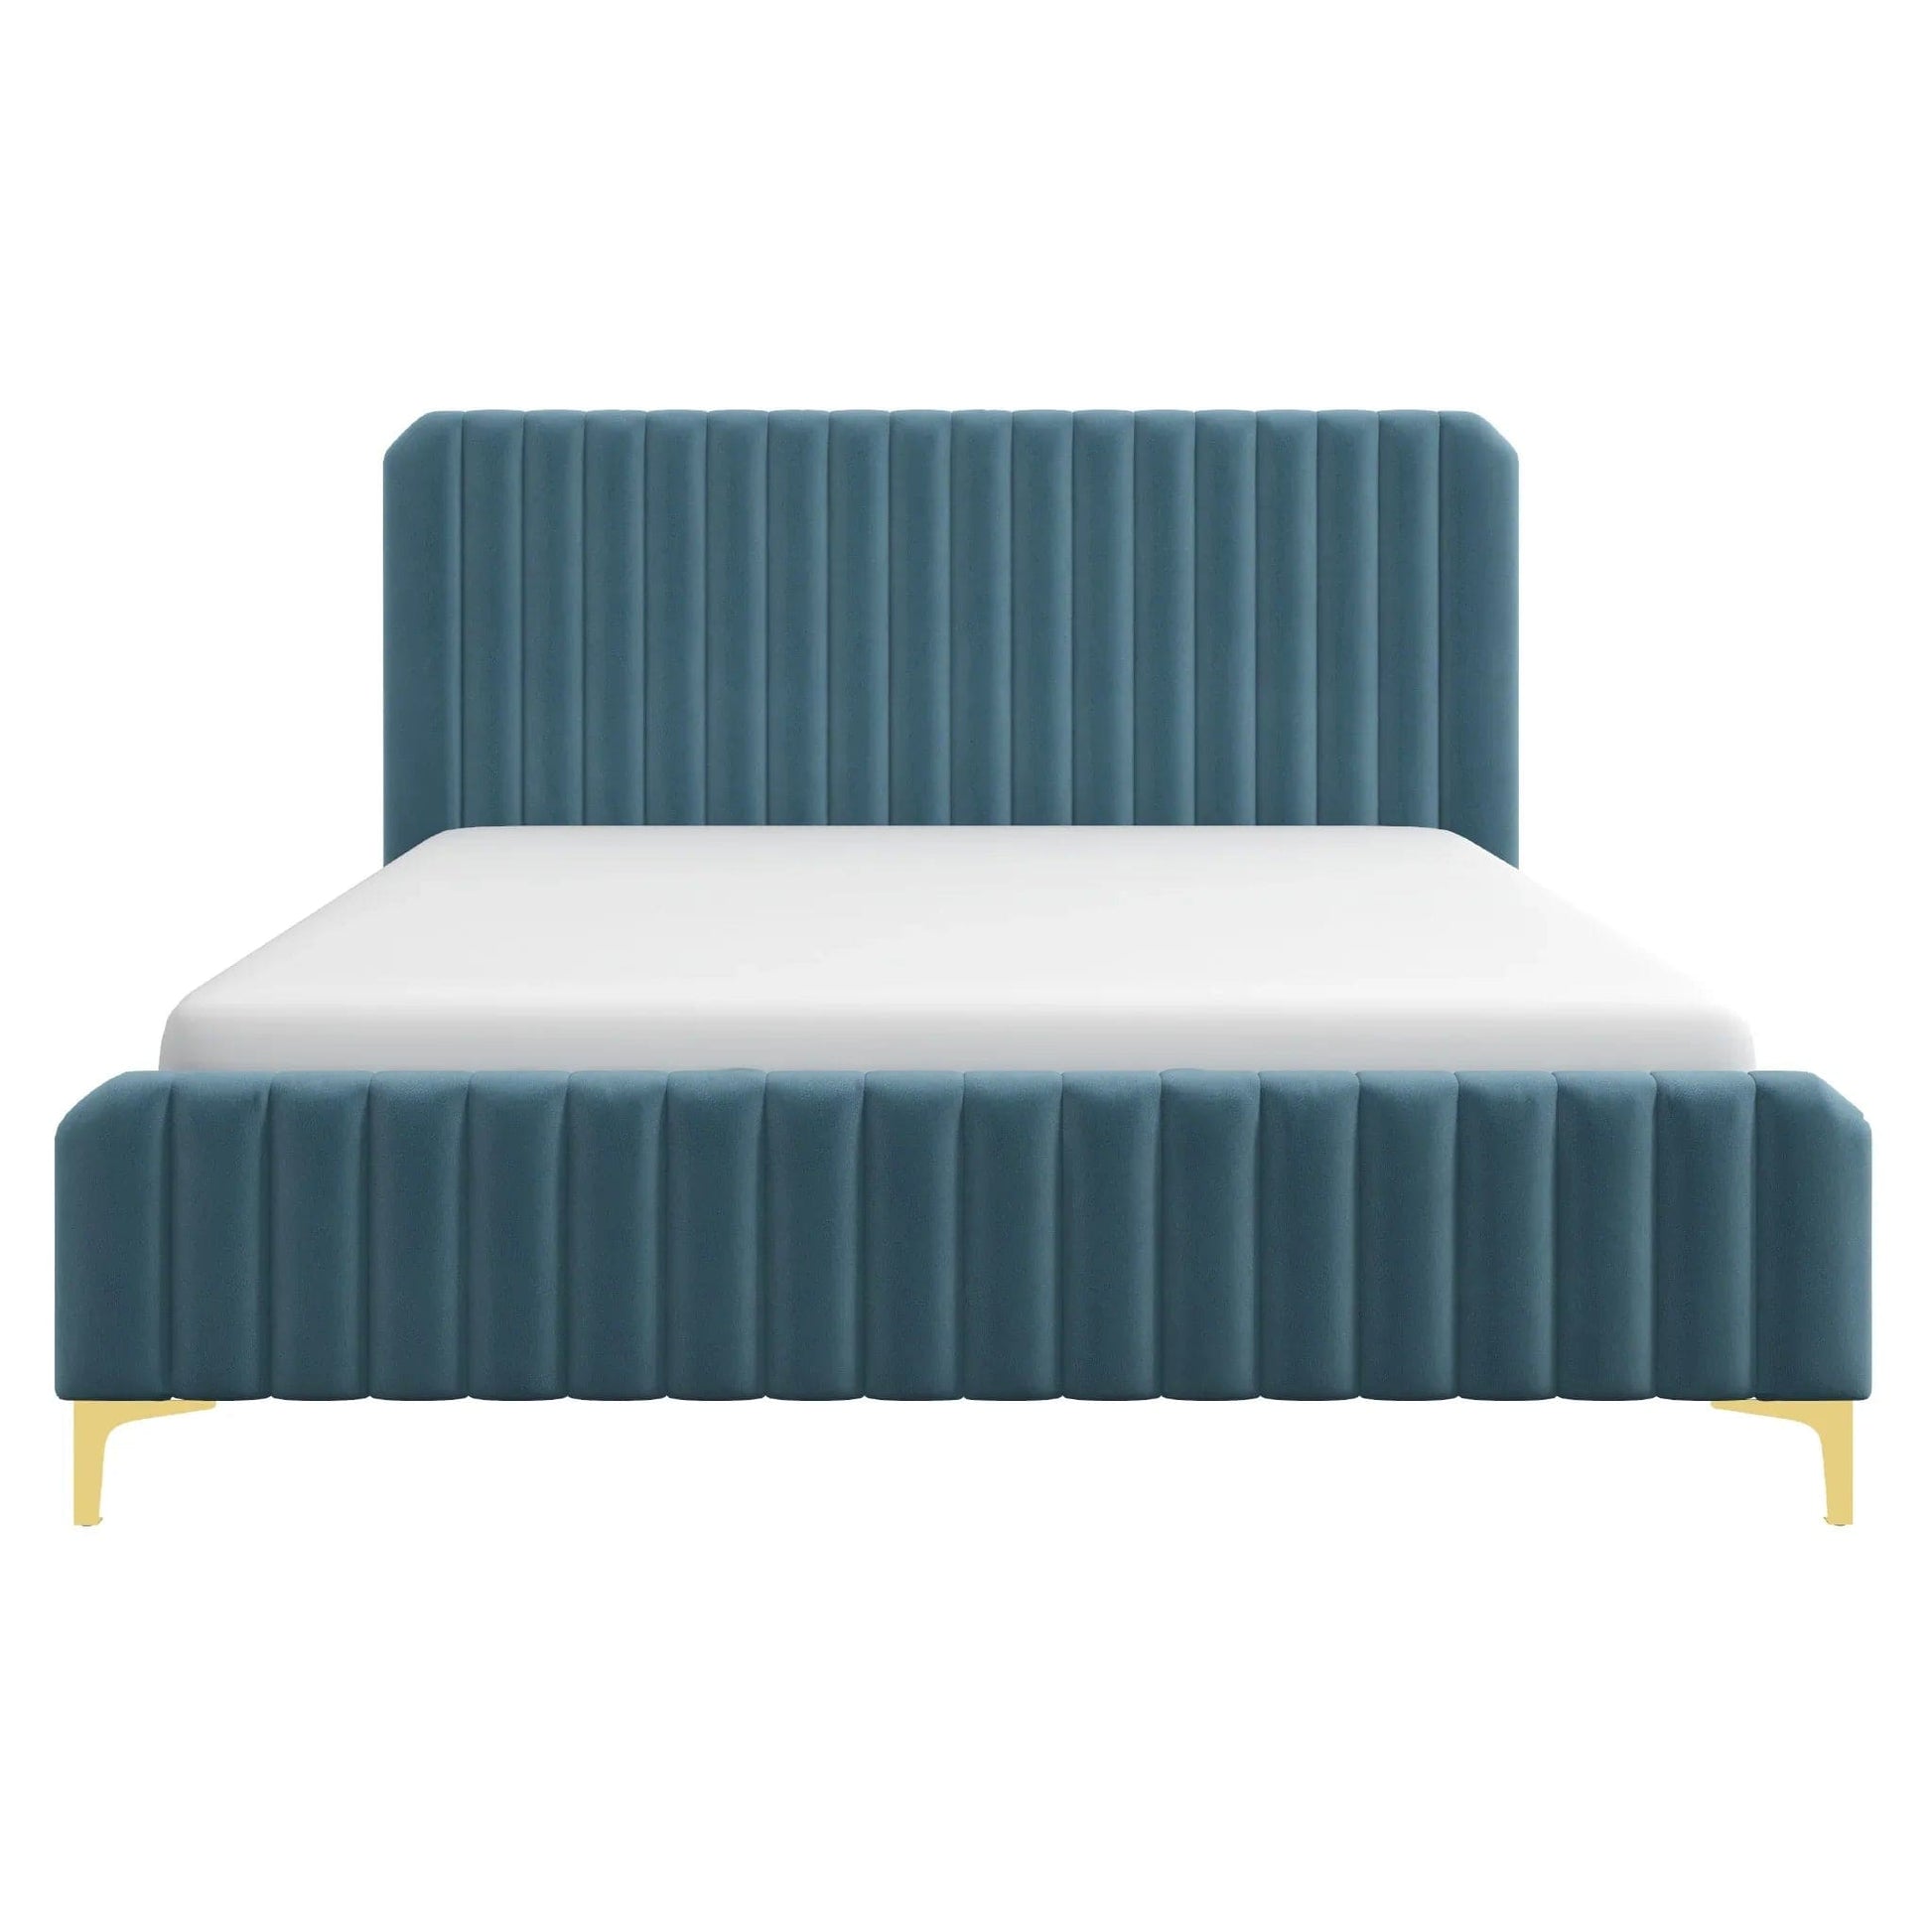 Ashcroft Furniture Co Bed King / Sea Blue Bethany Velvet Upholstered Platform Bed